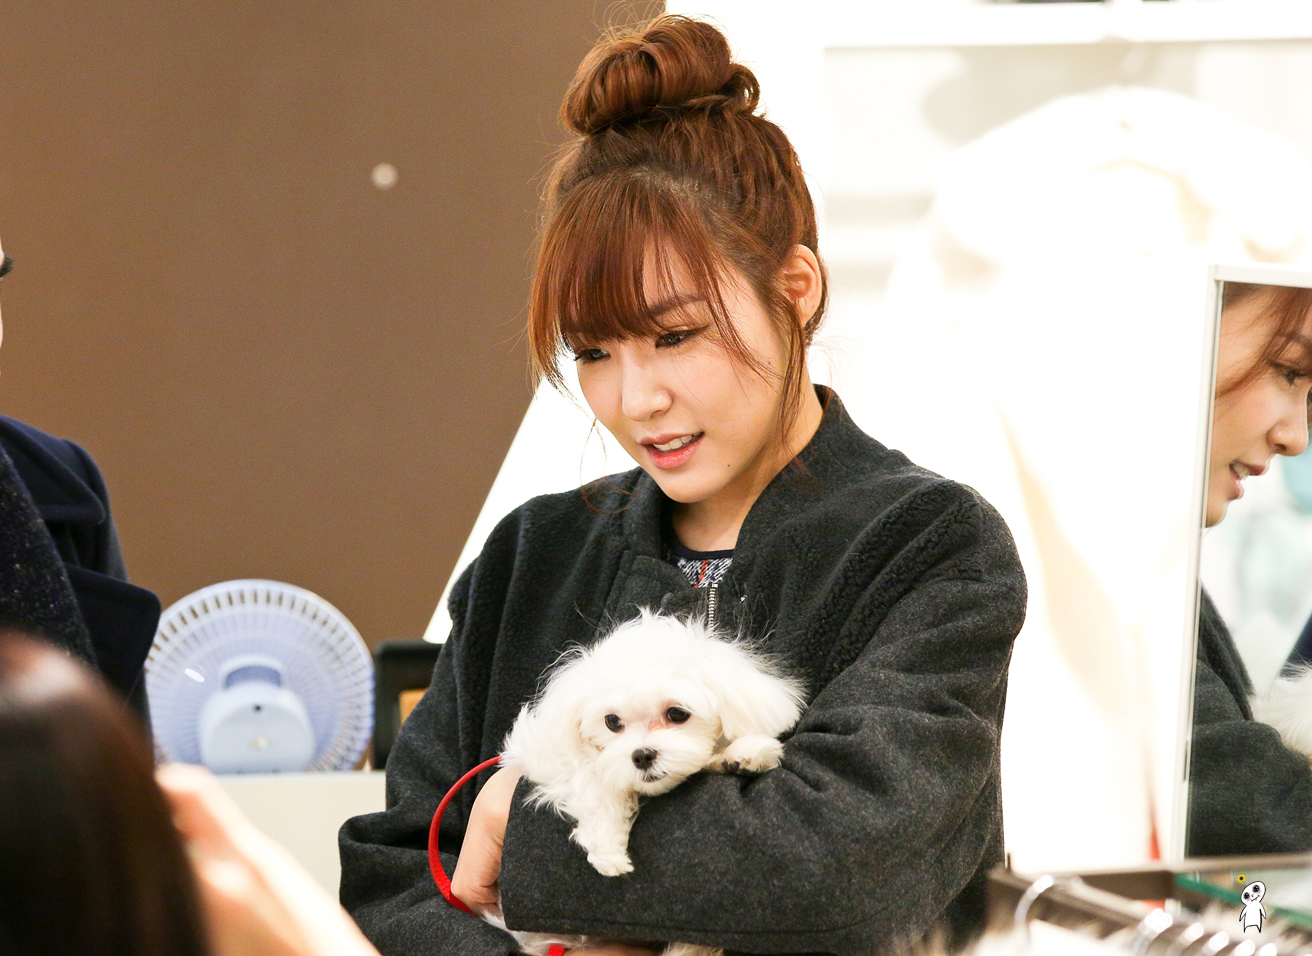 [PIC][28-11-2013]Tiffany ghé thăm cửa hàng "QUA" ở Hyundai Department Store vào trưa nay - Page 3 2552E14052980CBE2F7FF1